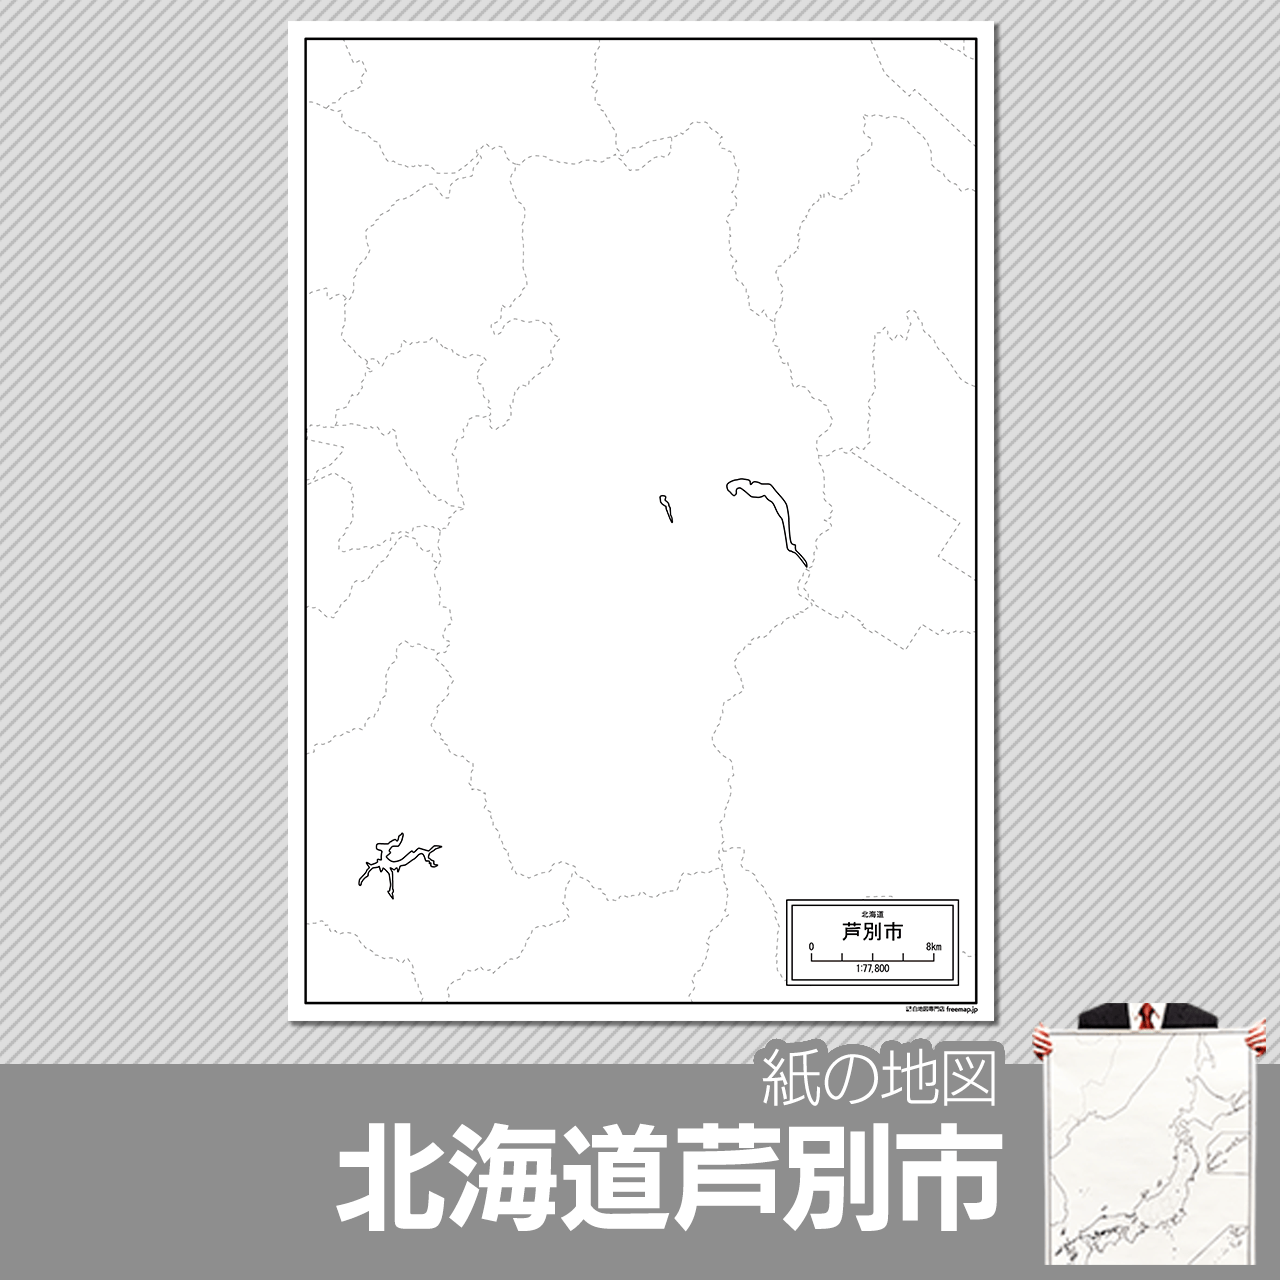 芦別市の紙の白地図のサムネイル